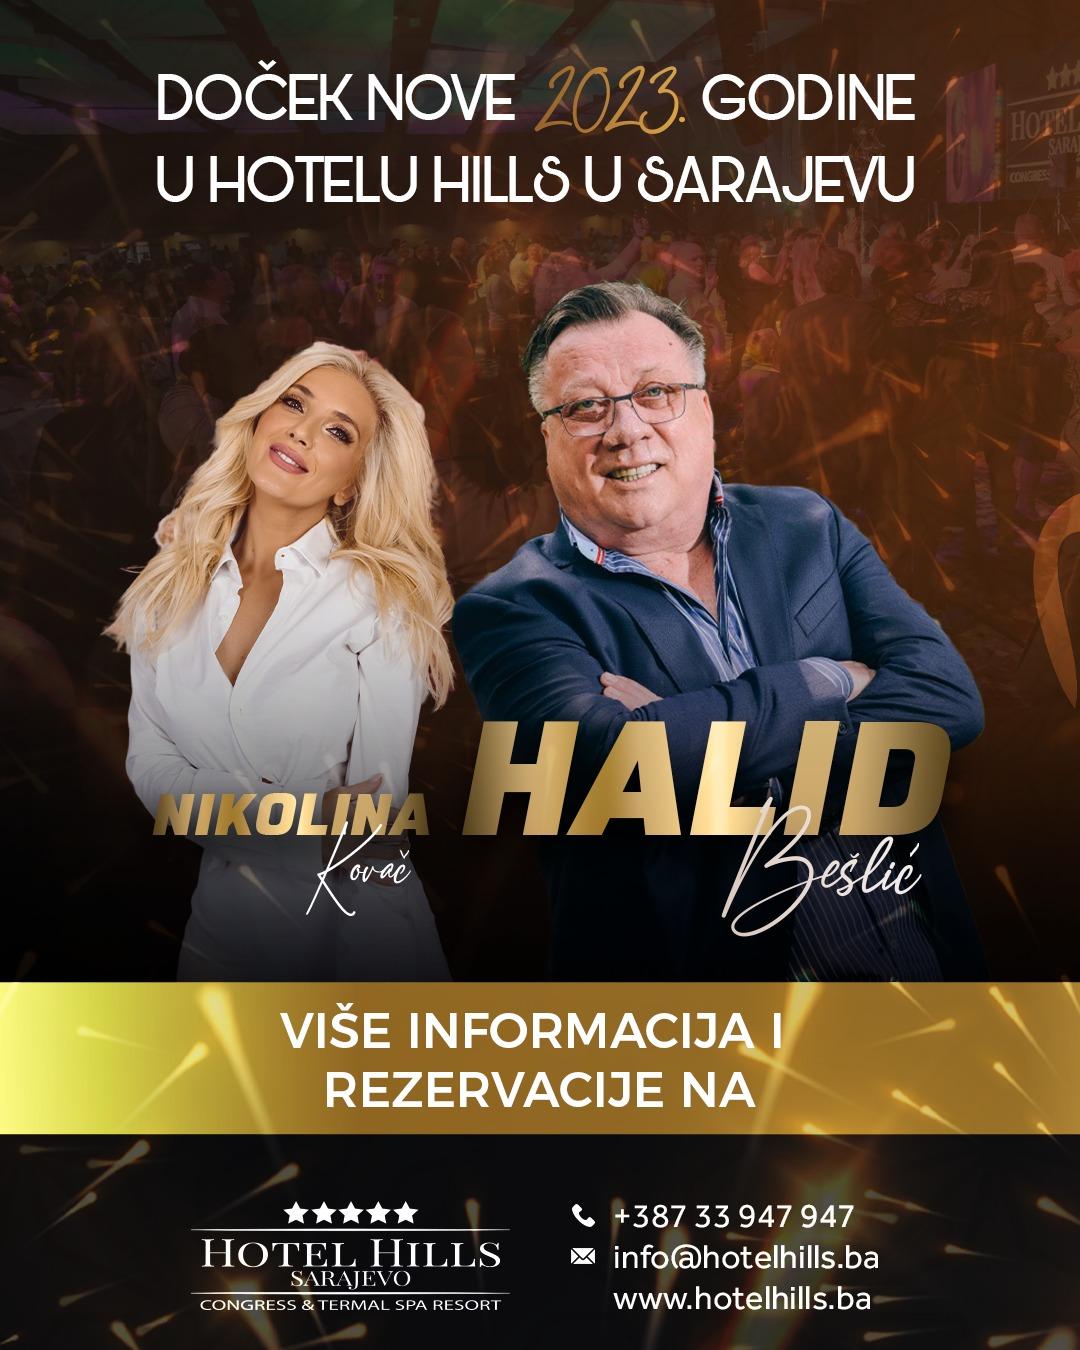 Nikolina Kovač i Halid Bešlić - Avaz